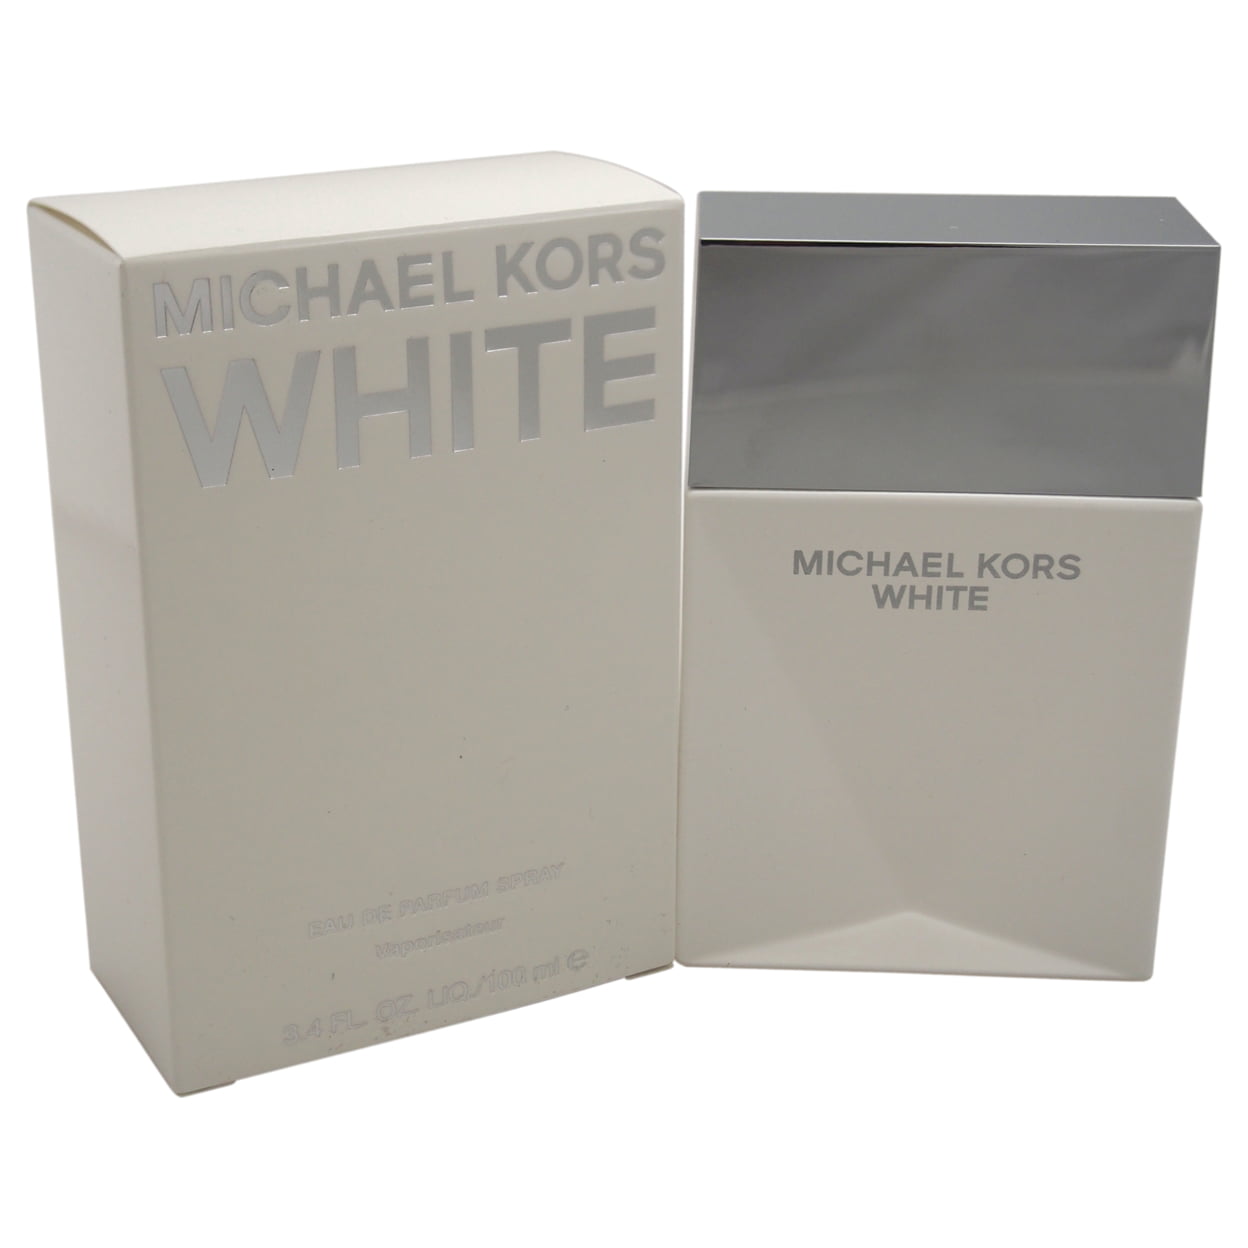 Buy Michael Kors Coral Eau De Parfum 30ml Online at Chemist Warehouse